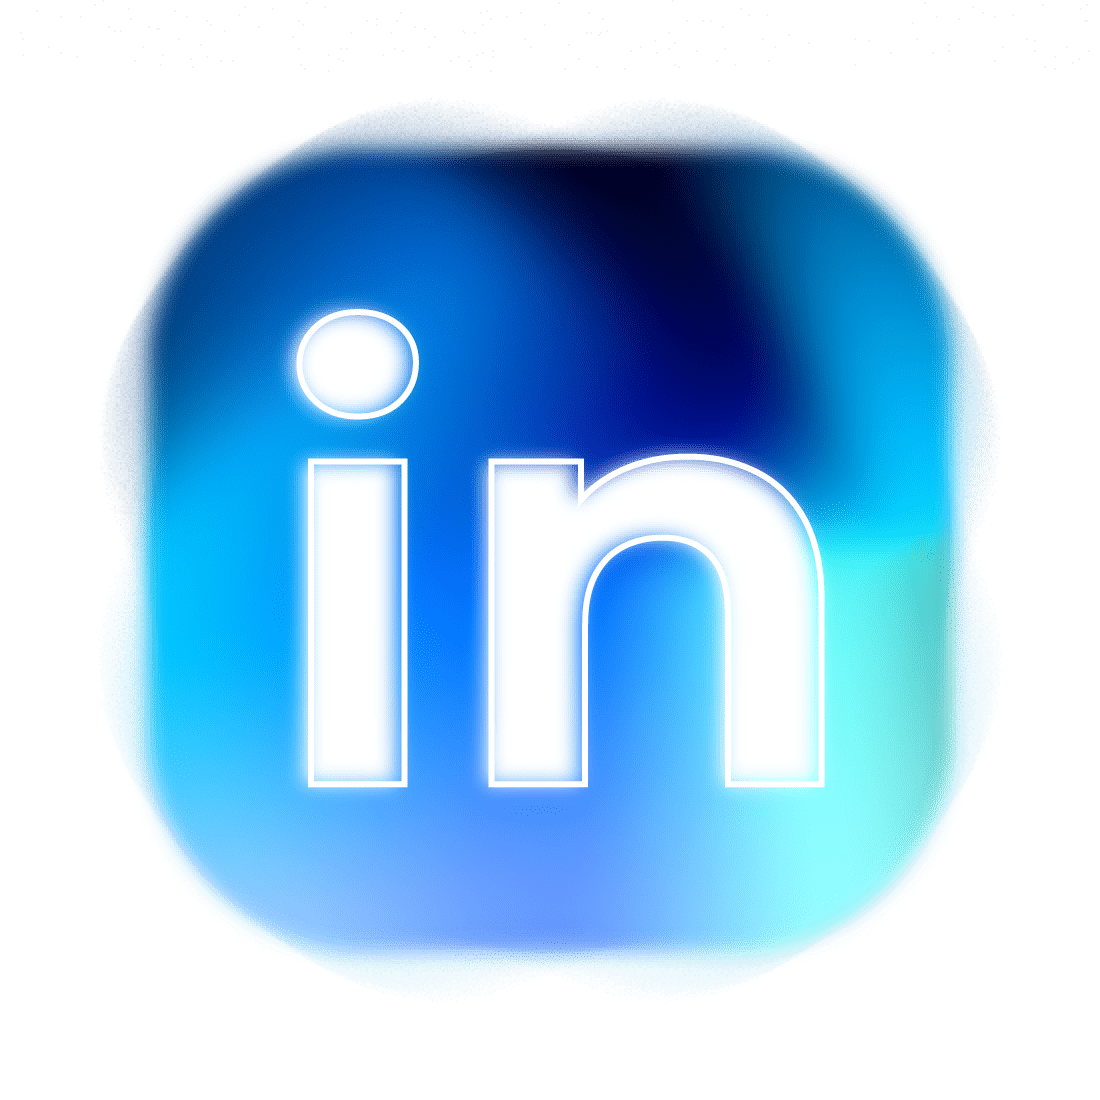 Linked In logo designed by DANSU